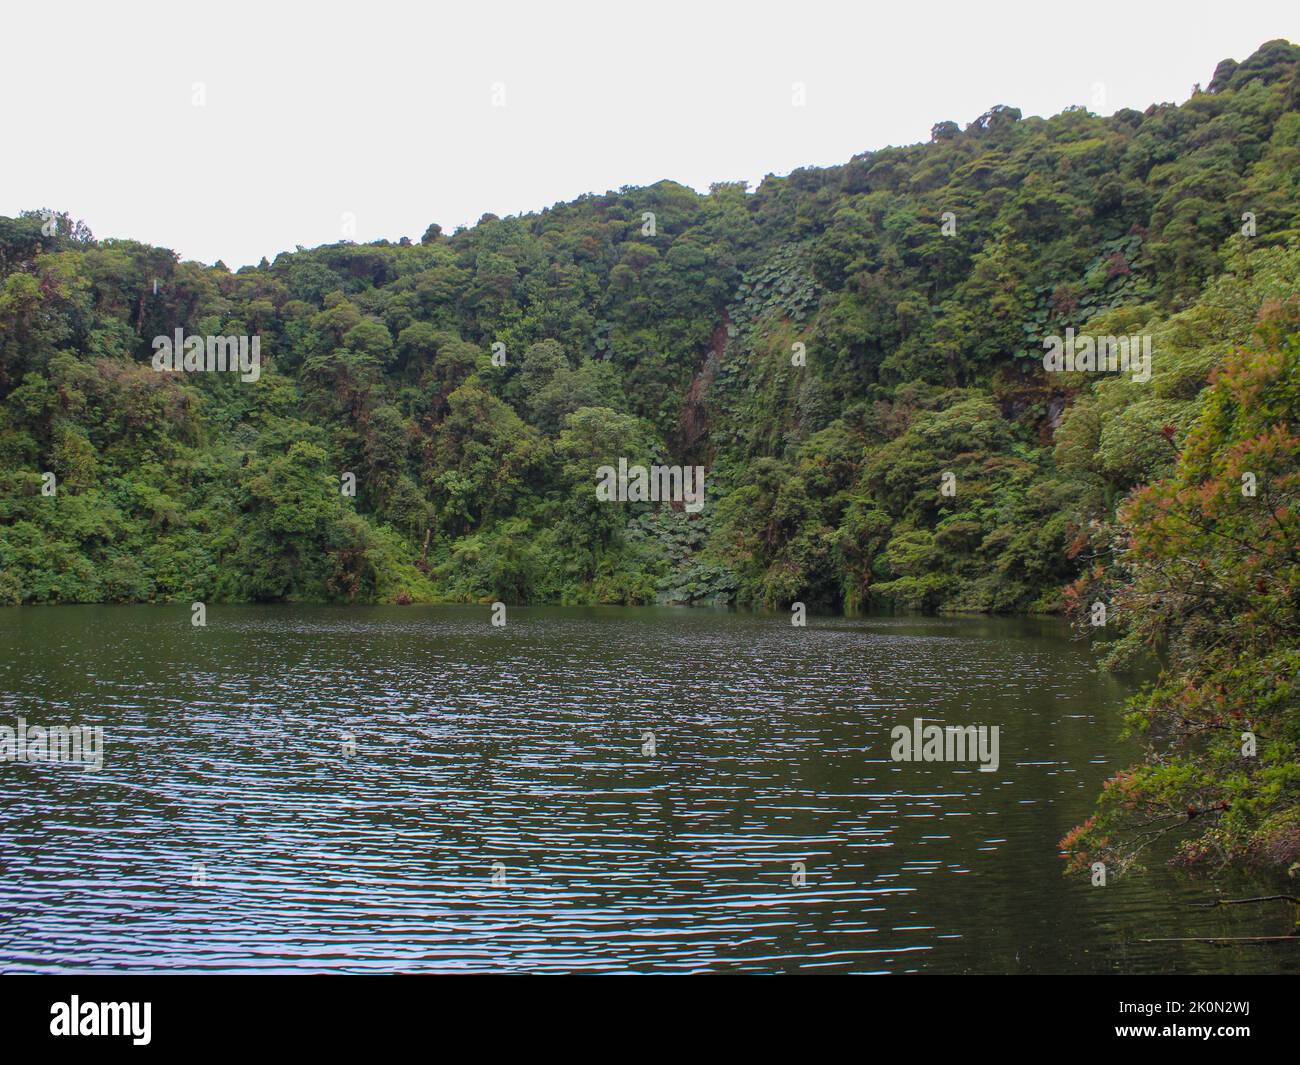 Vista sobre la laguna Volcán Barba encontrada en el Parque Nacional Braulio Carrillo, Costa Rica Foto de stock